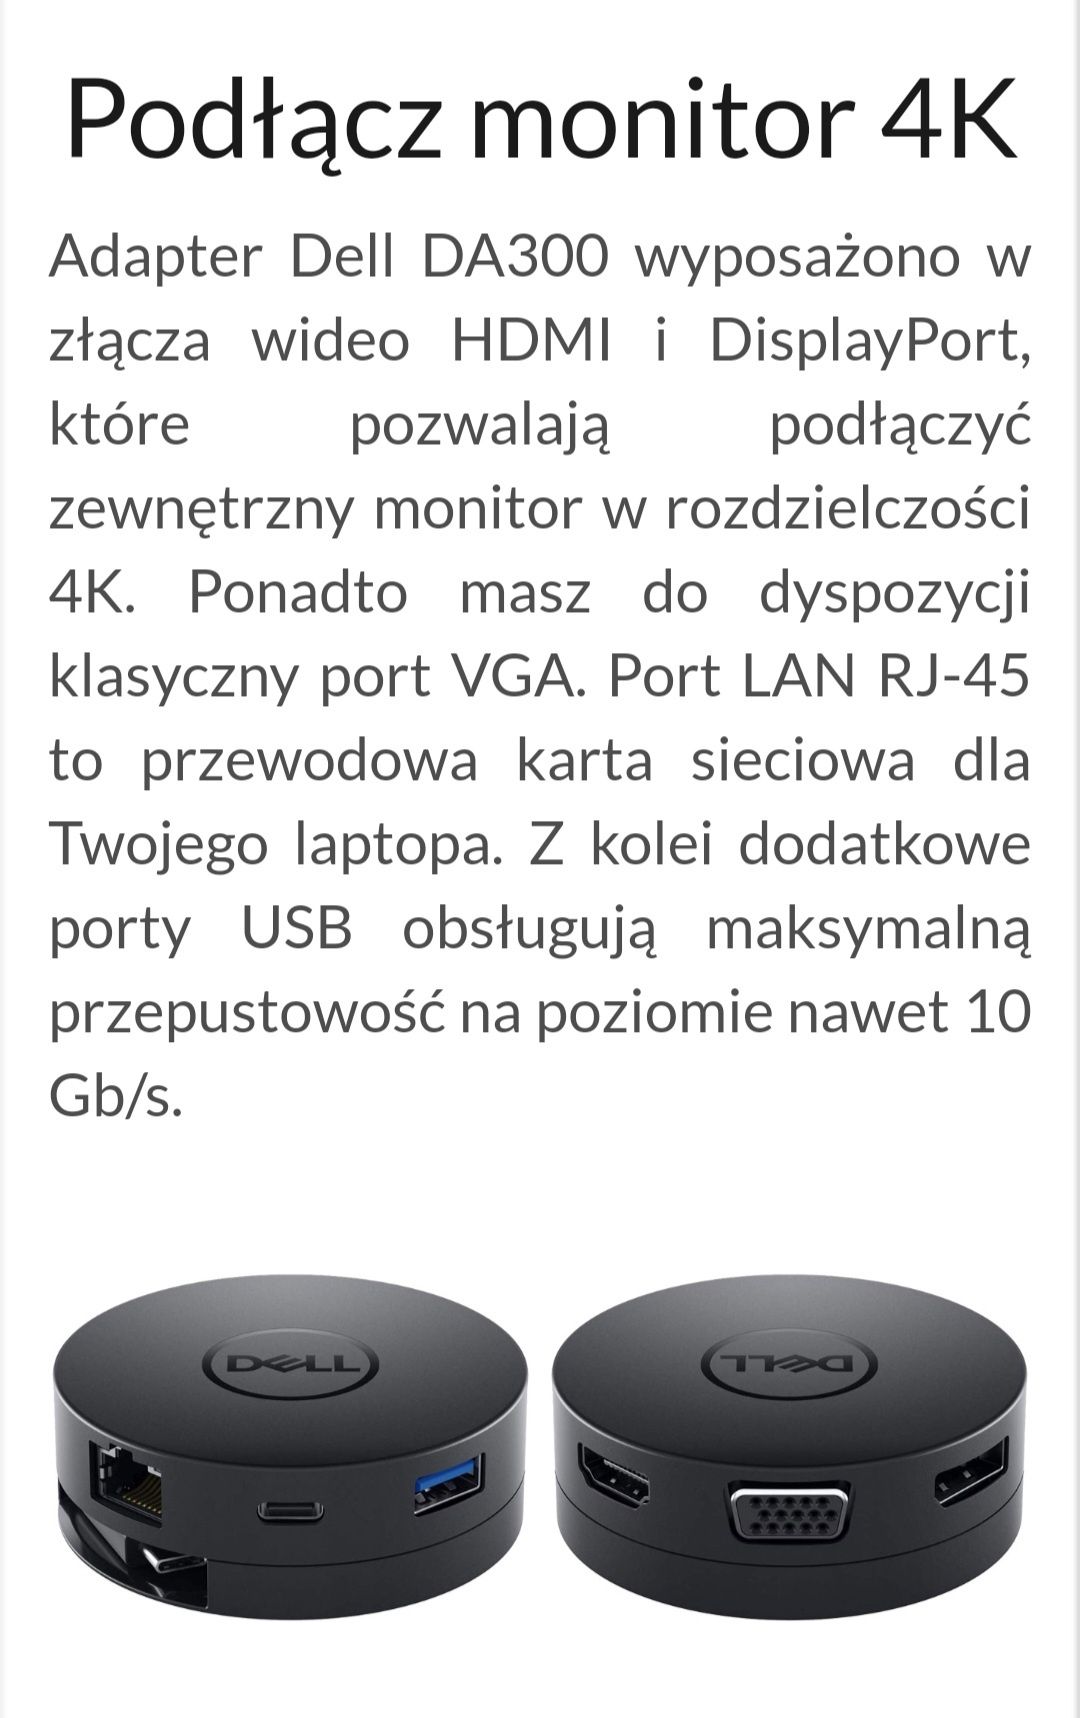 Mobile adapter Dell DA300 USB-C - HDMI, VGA, DisplayPort, RJ-45